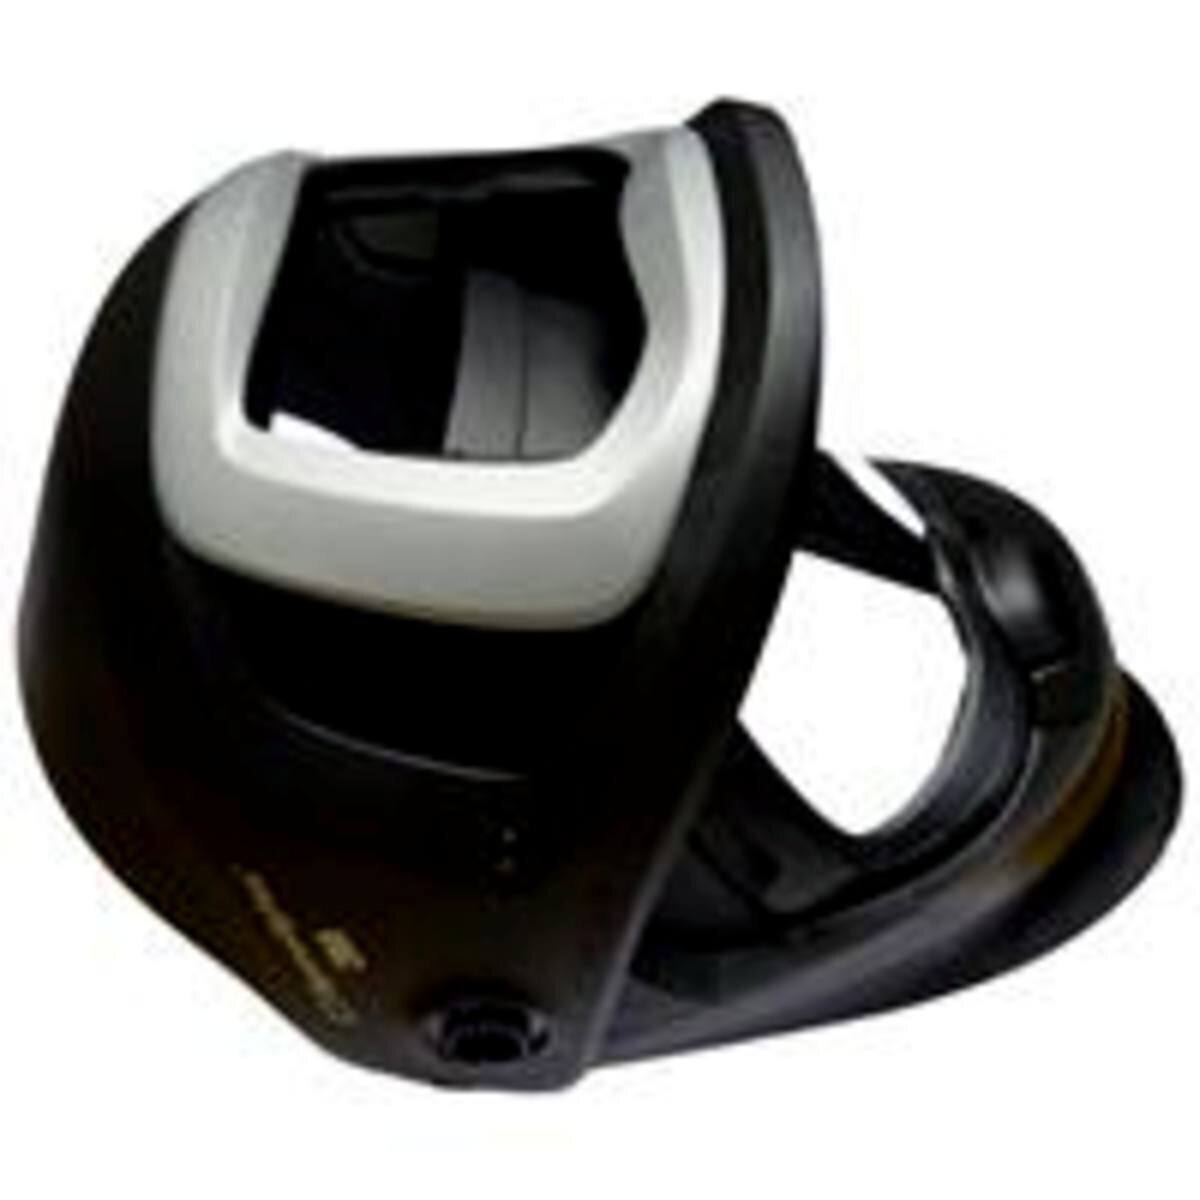 3M Speedglas lasmasker 9100 FX Air zonder ADF automatisch lasfilter, met zijruit, zonder hoofdband #541890